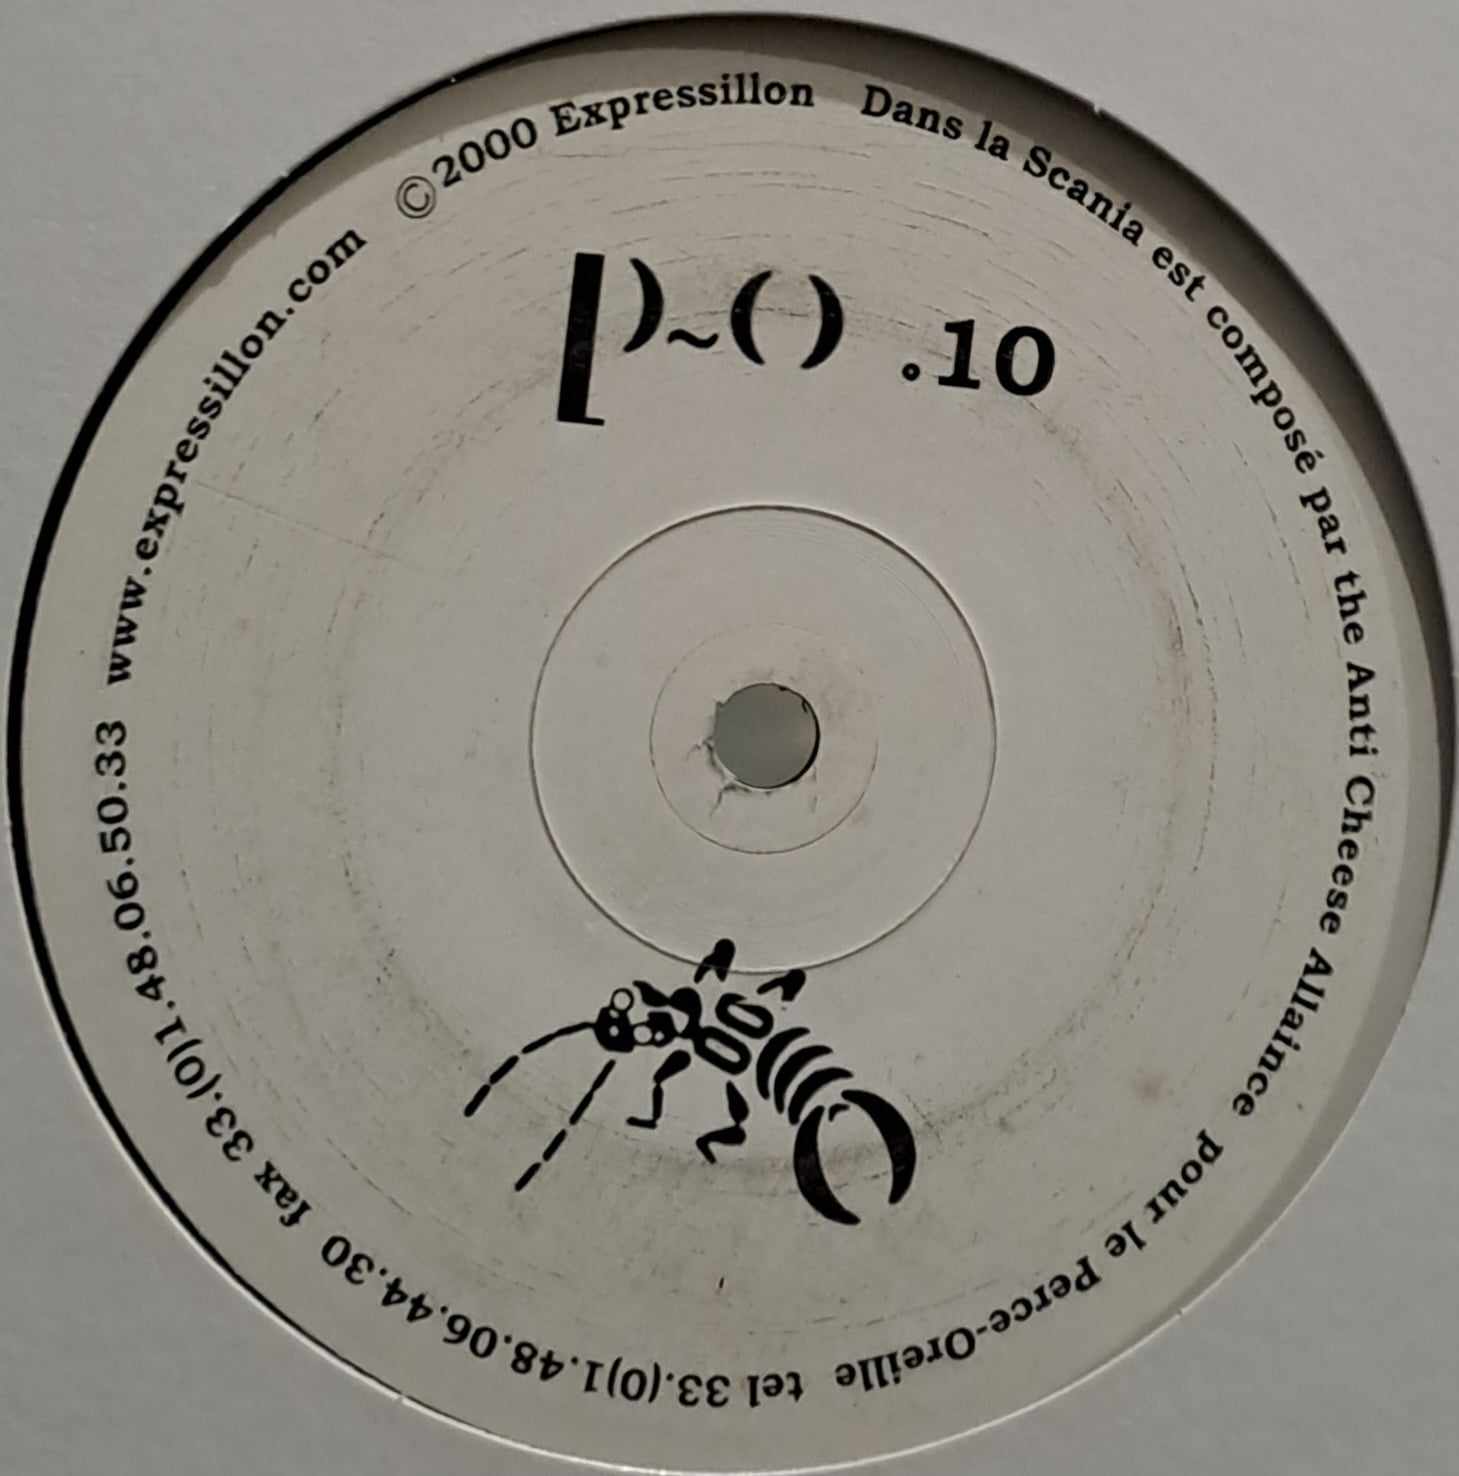 Perce~Oreille 10 - vinyle freetekno